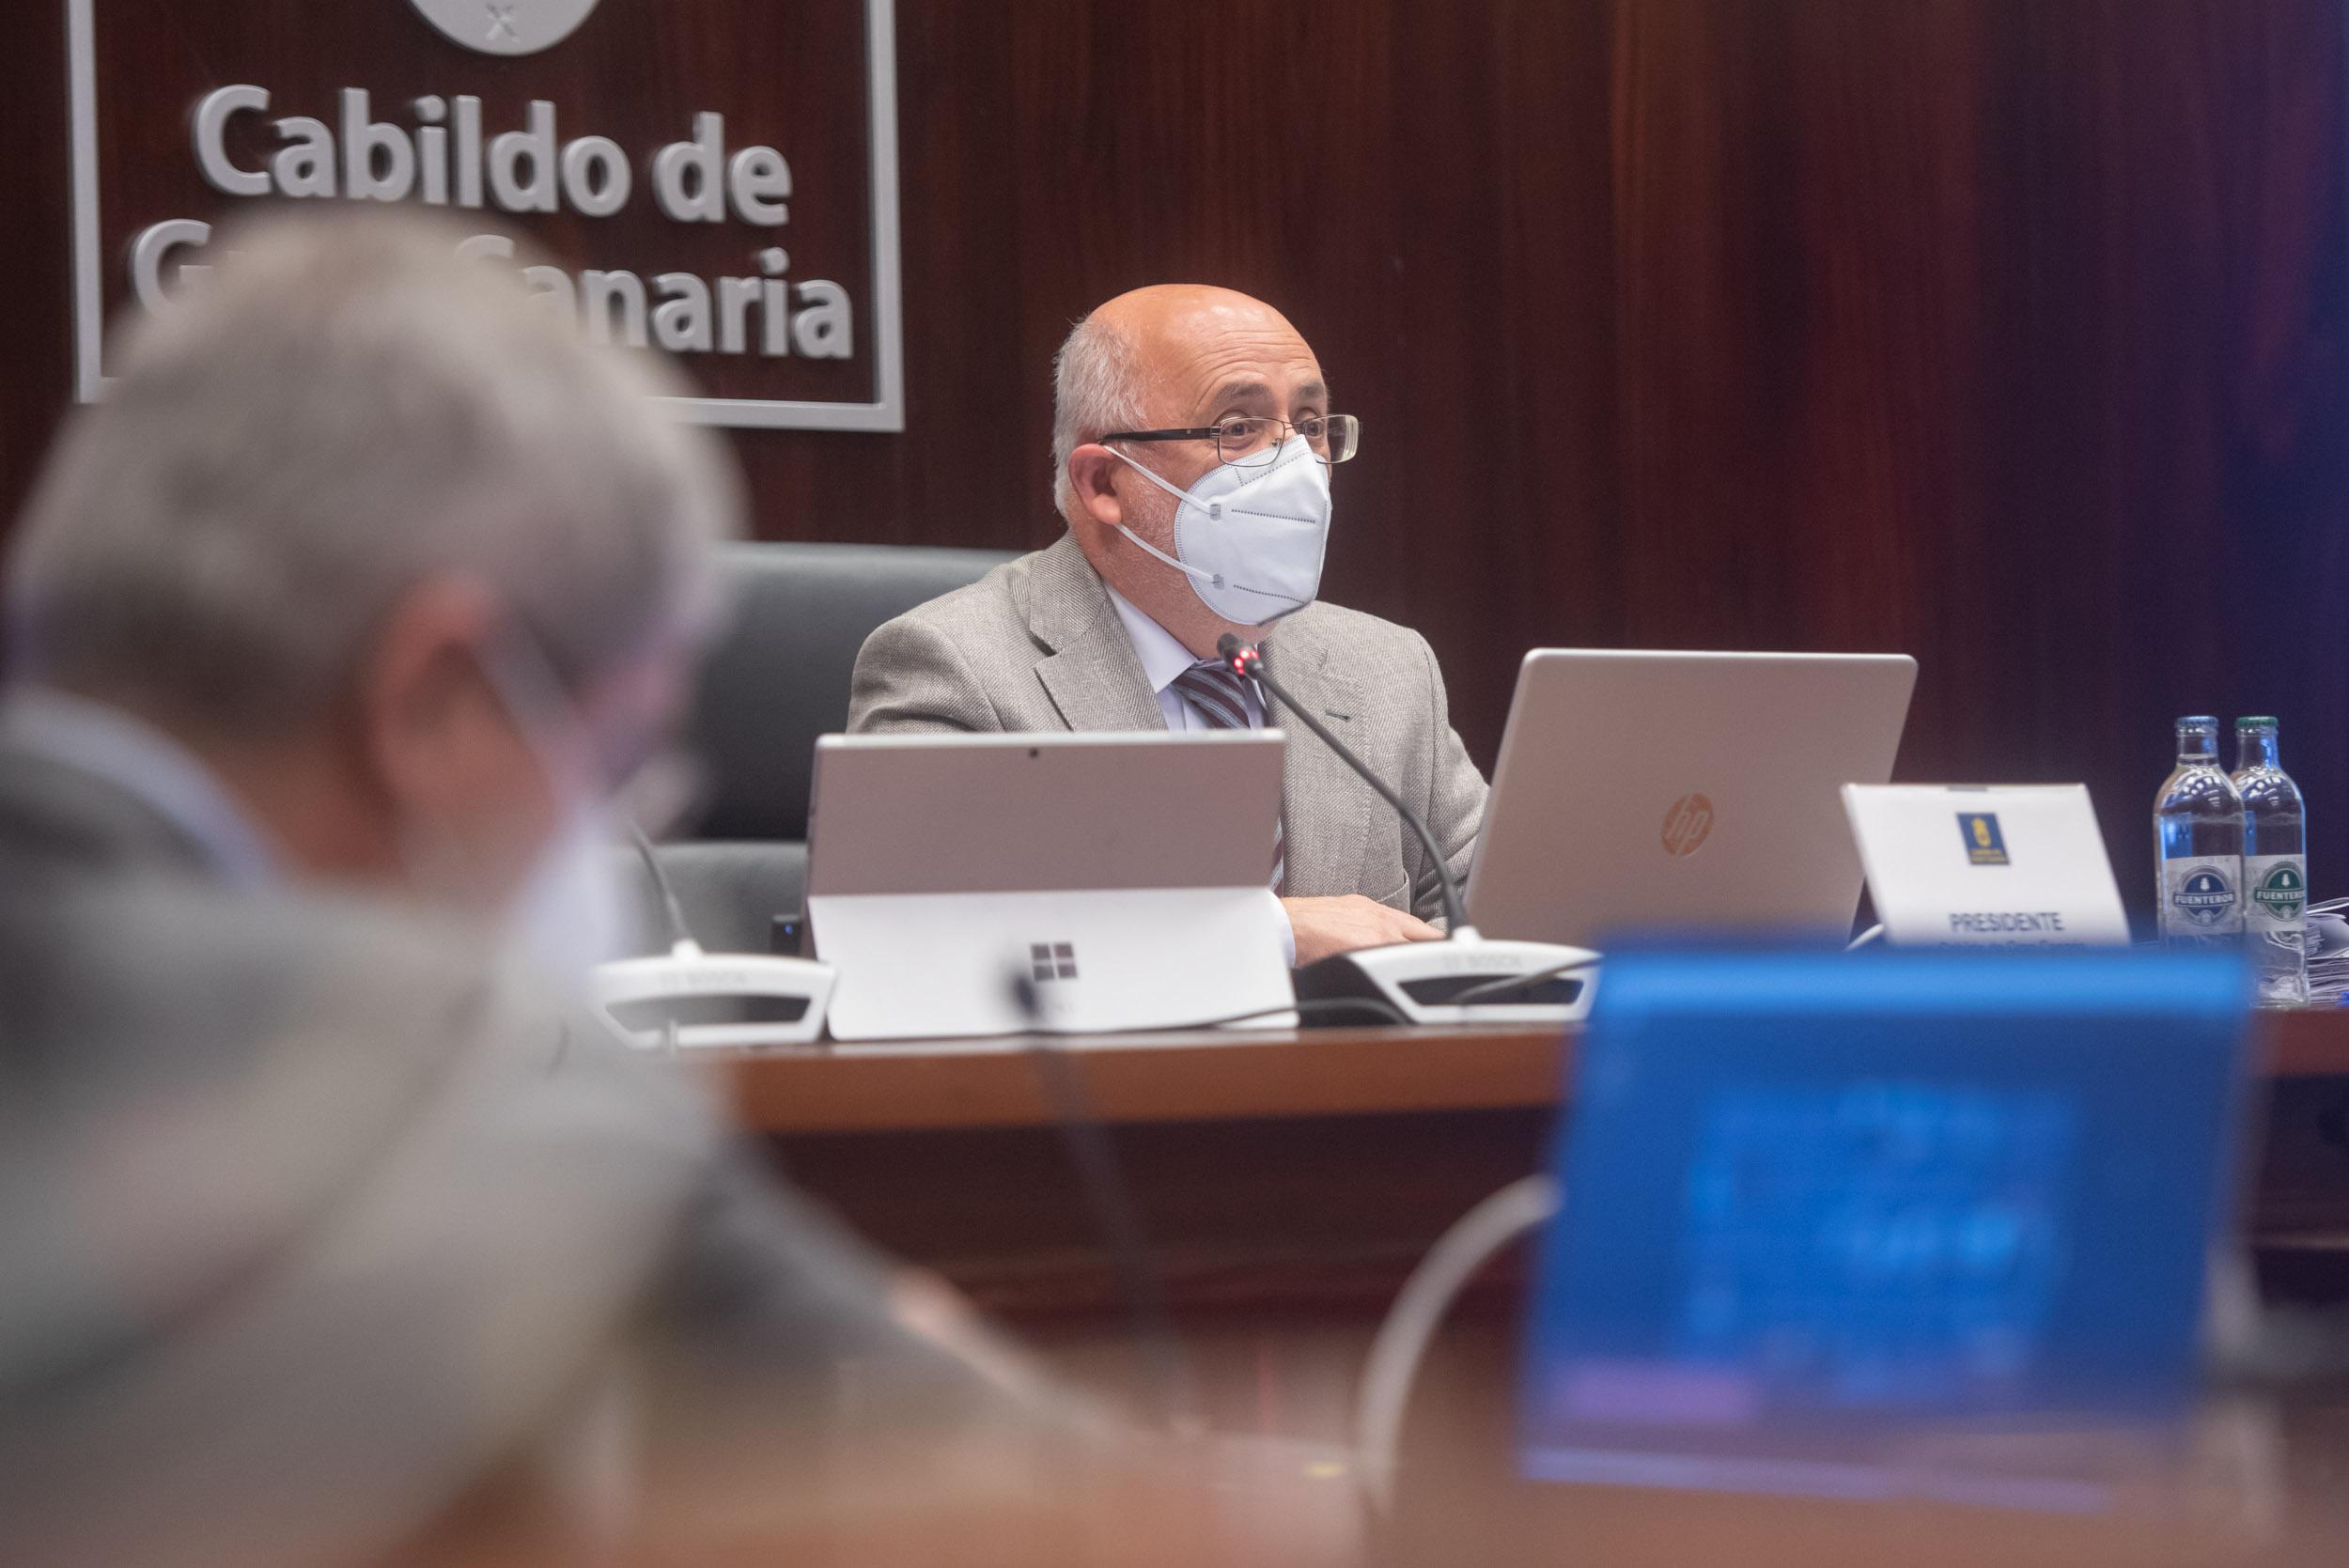 El Cabildo de Gran Canaria aprueba 7 millones para ayudas / CanariasNoticias.es